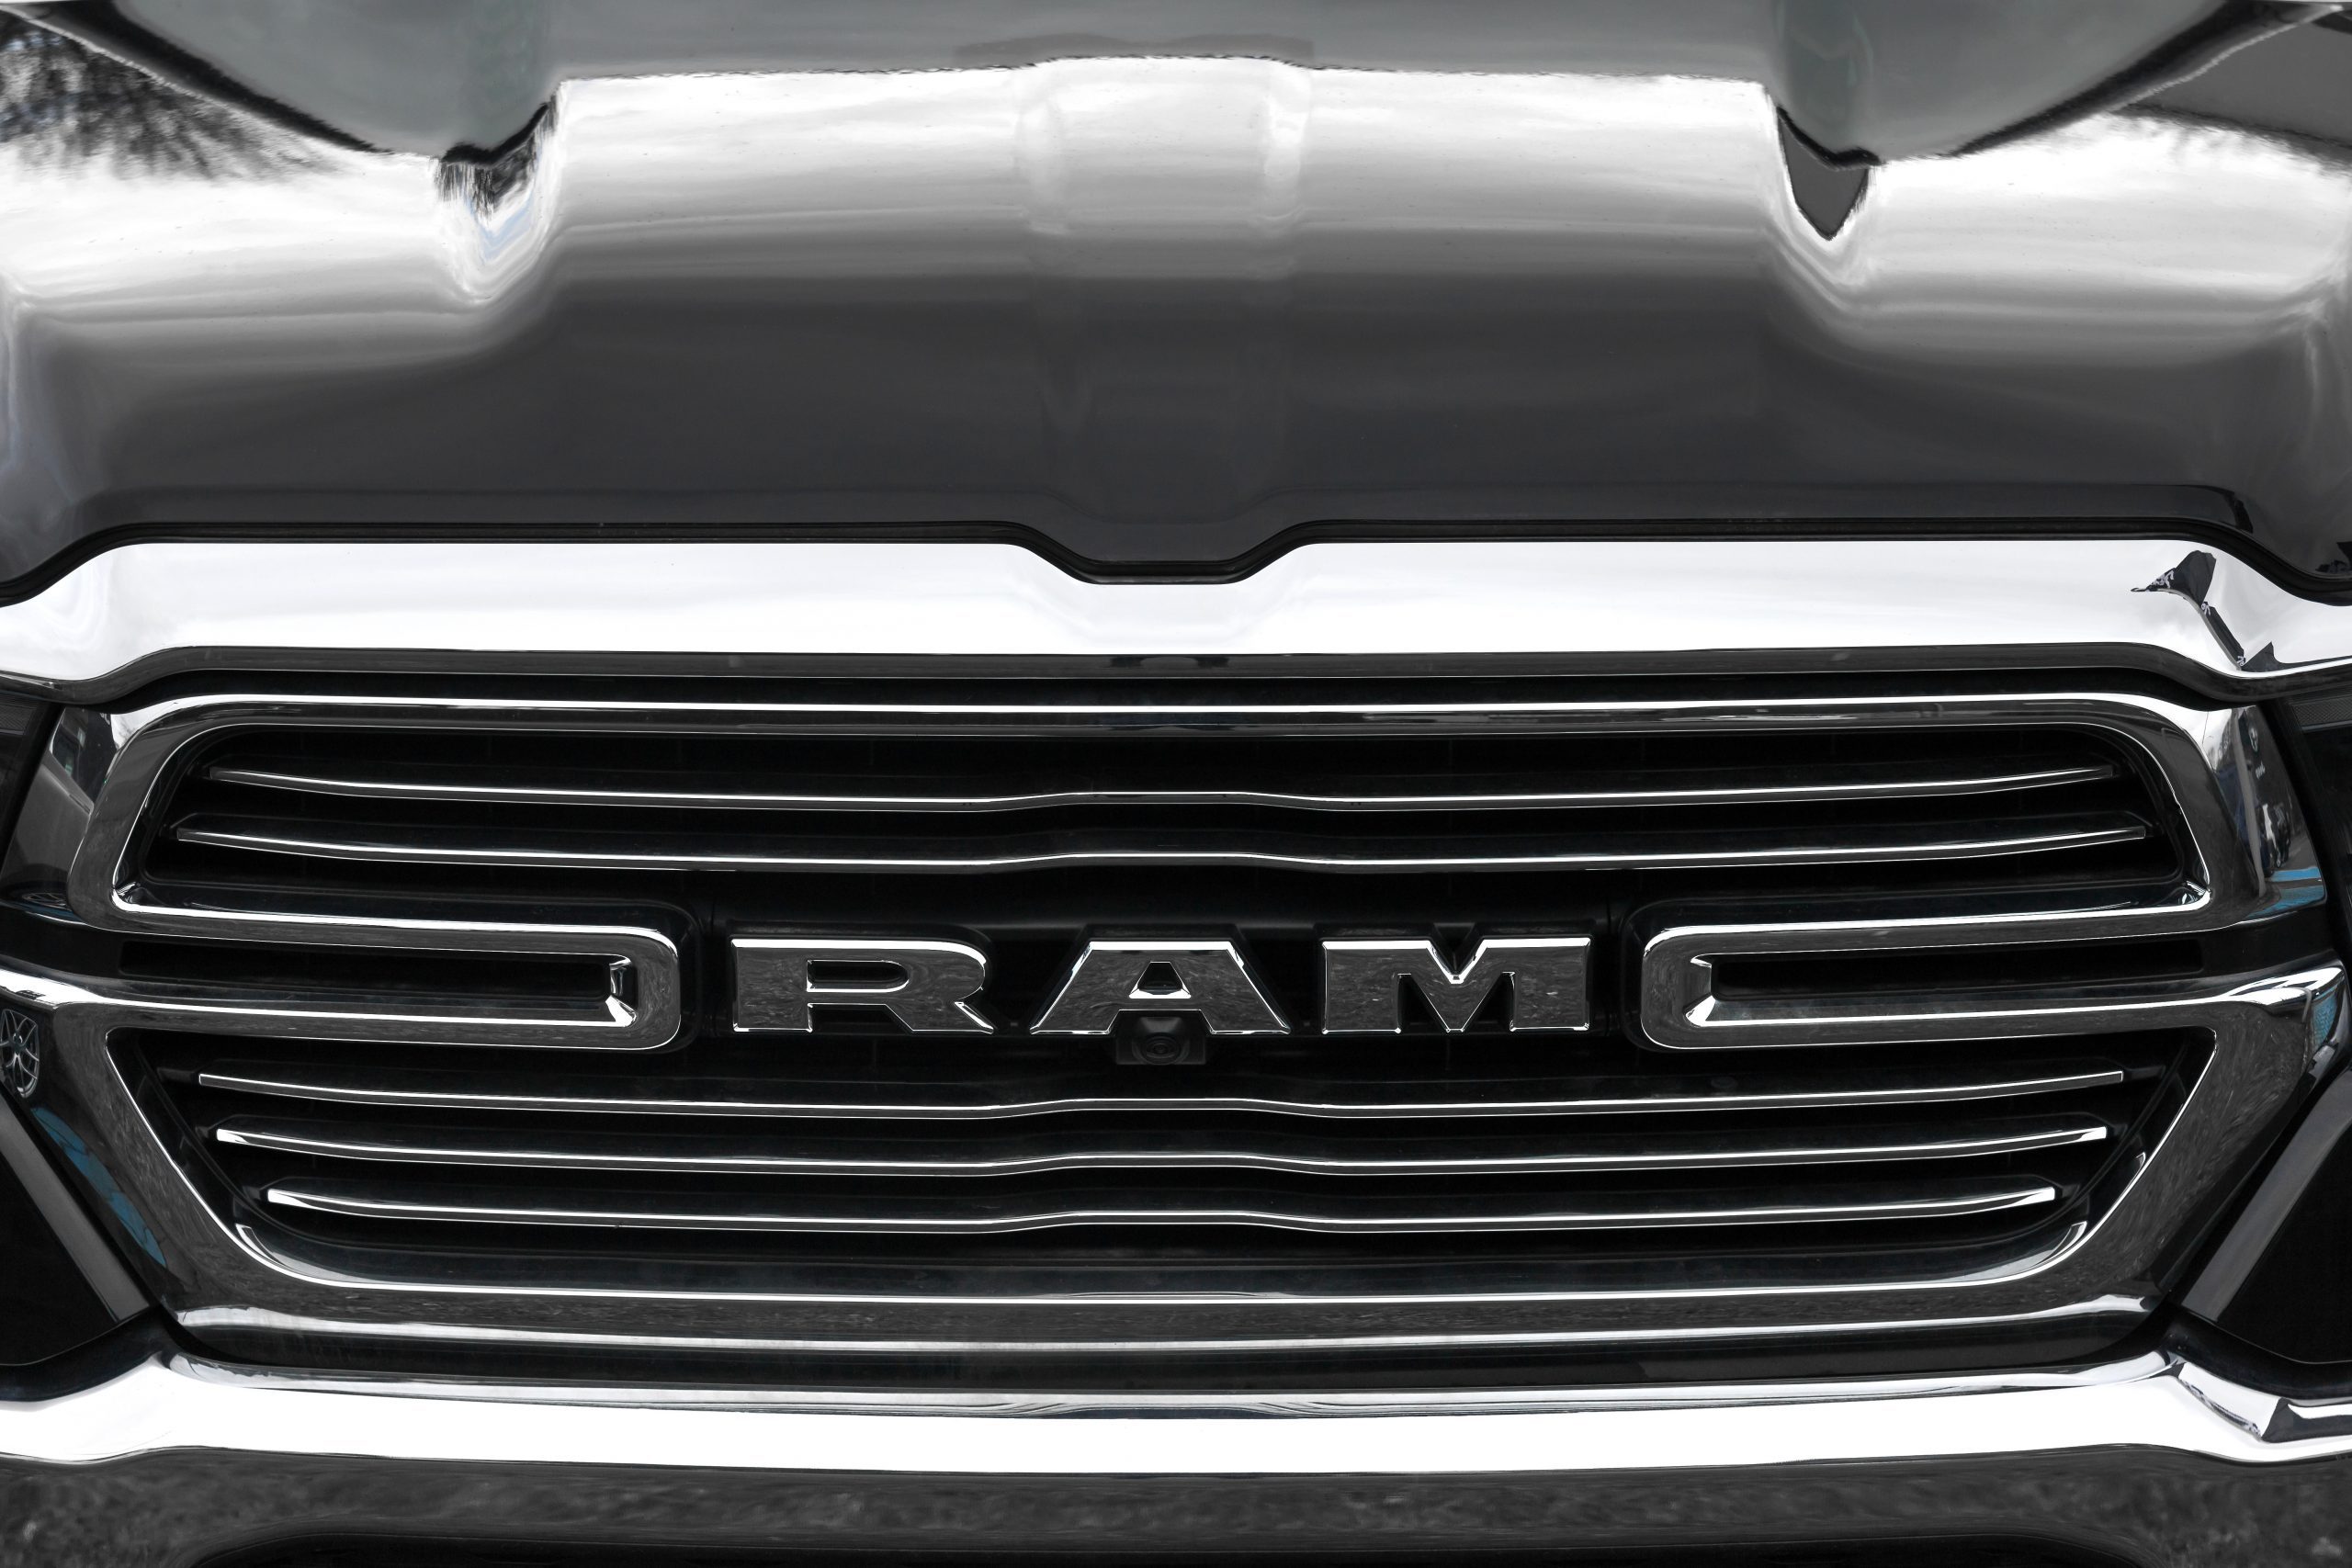 A lawsuit claims Dodge Ram vehicles leak coolant